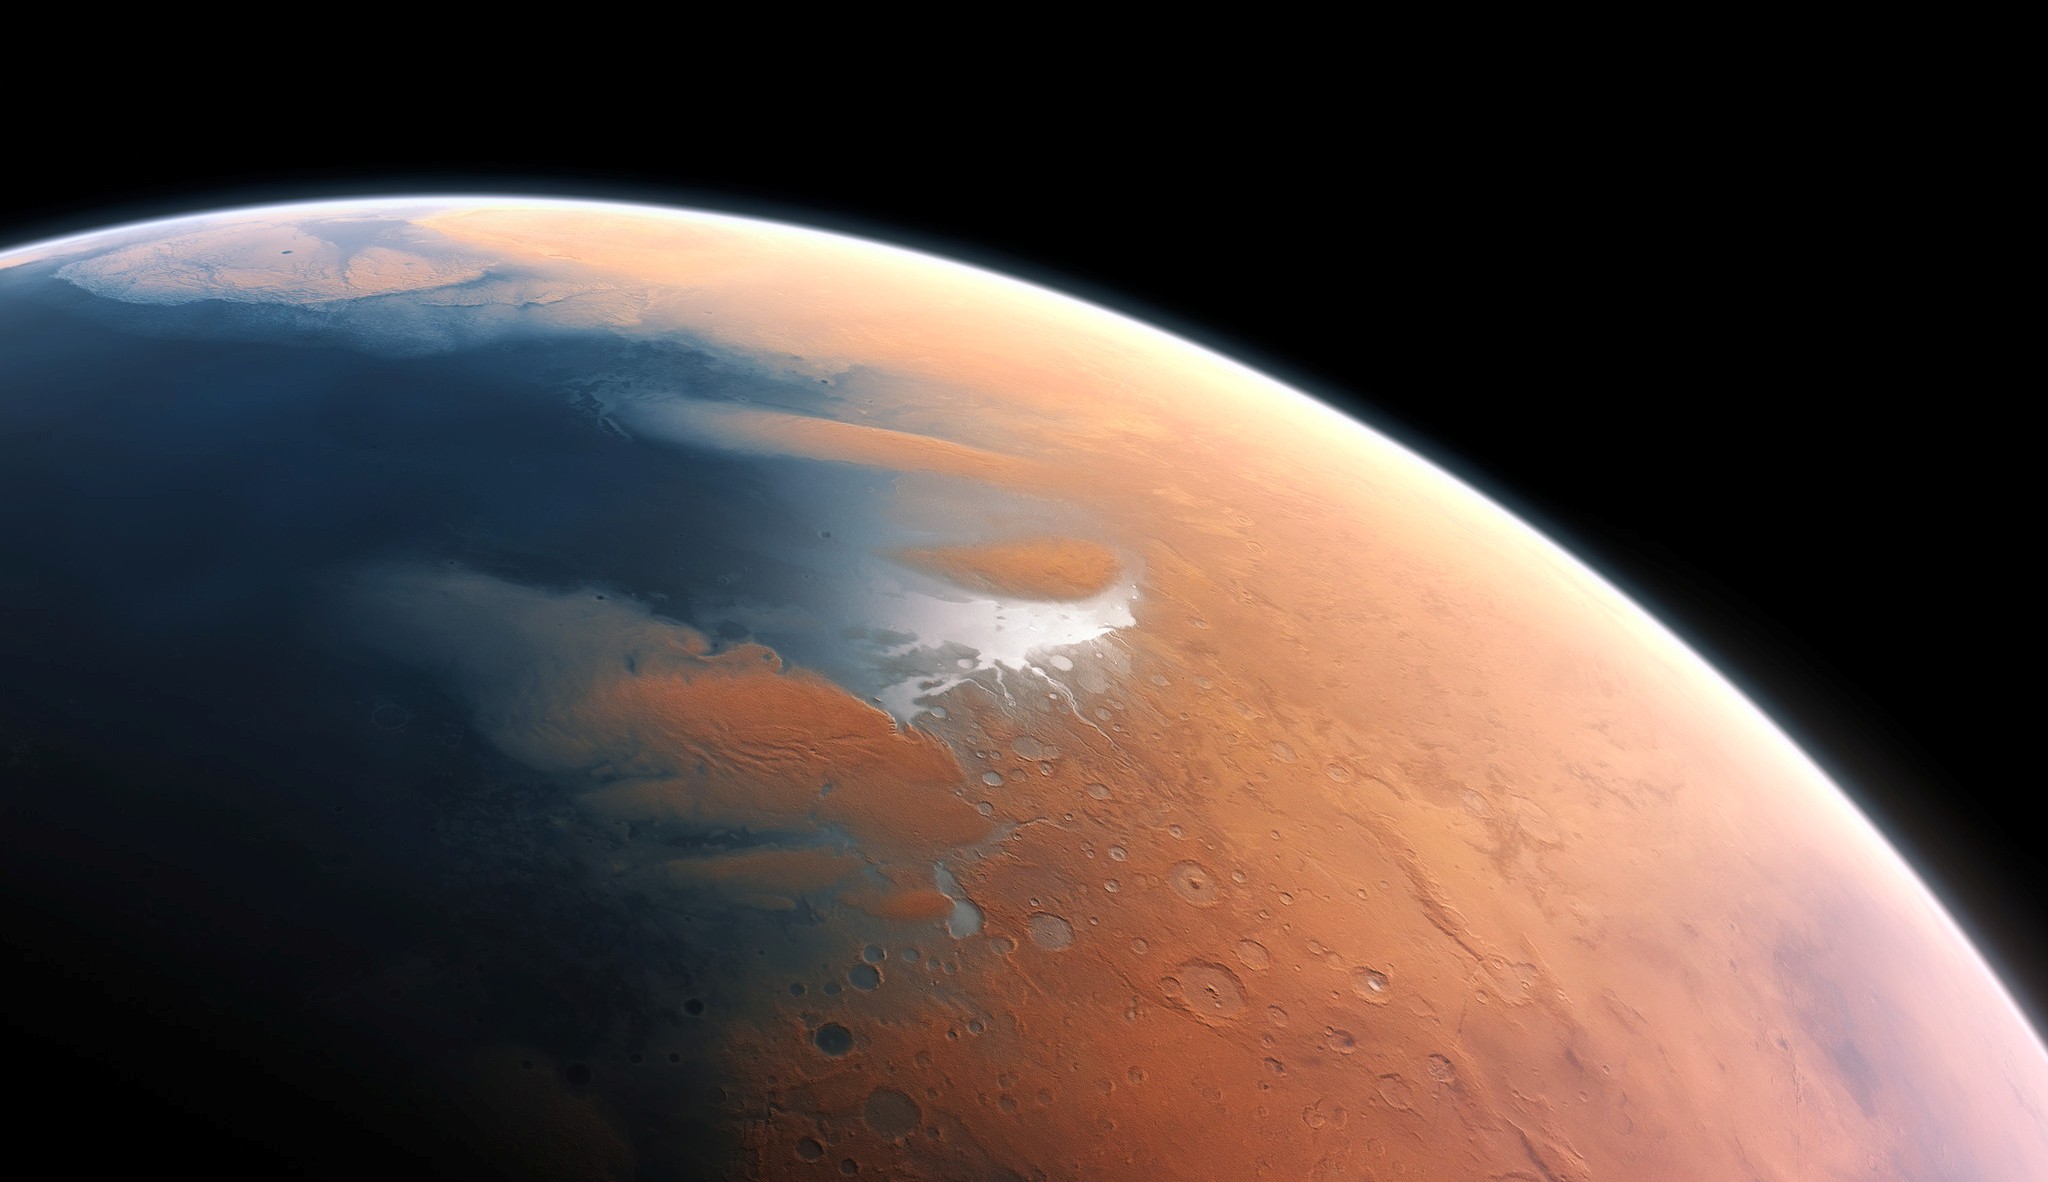 Cette vue d'artiste montre à quoi devait ressembler Mars voici quatre milliards d'années. La toute jeune planète devait renfermer suffisamment d'eau liquide pour que l'intégralité de sa surface en soit couverte, sur une hauteur d’environ 140 mètres. Il semble plus probable toutefois que l'eau liquide se soit constituée en un océan occupant près de la moitié de l'hémisphère nord de la planète. Dans certaines régions, la profondeur de cet océan pouvait dépasser 1,6 kilomètre. © ESO, M. Kornmesser